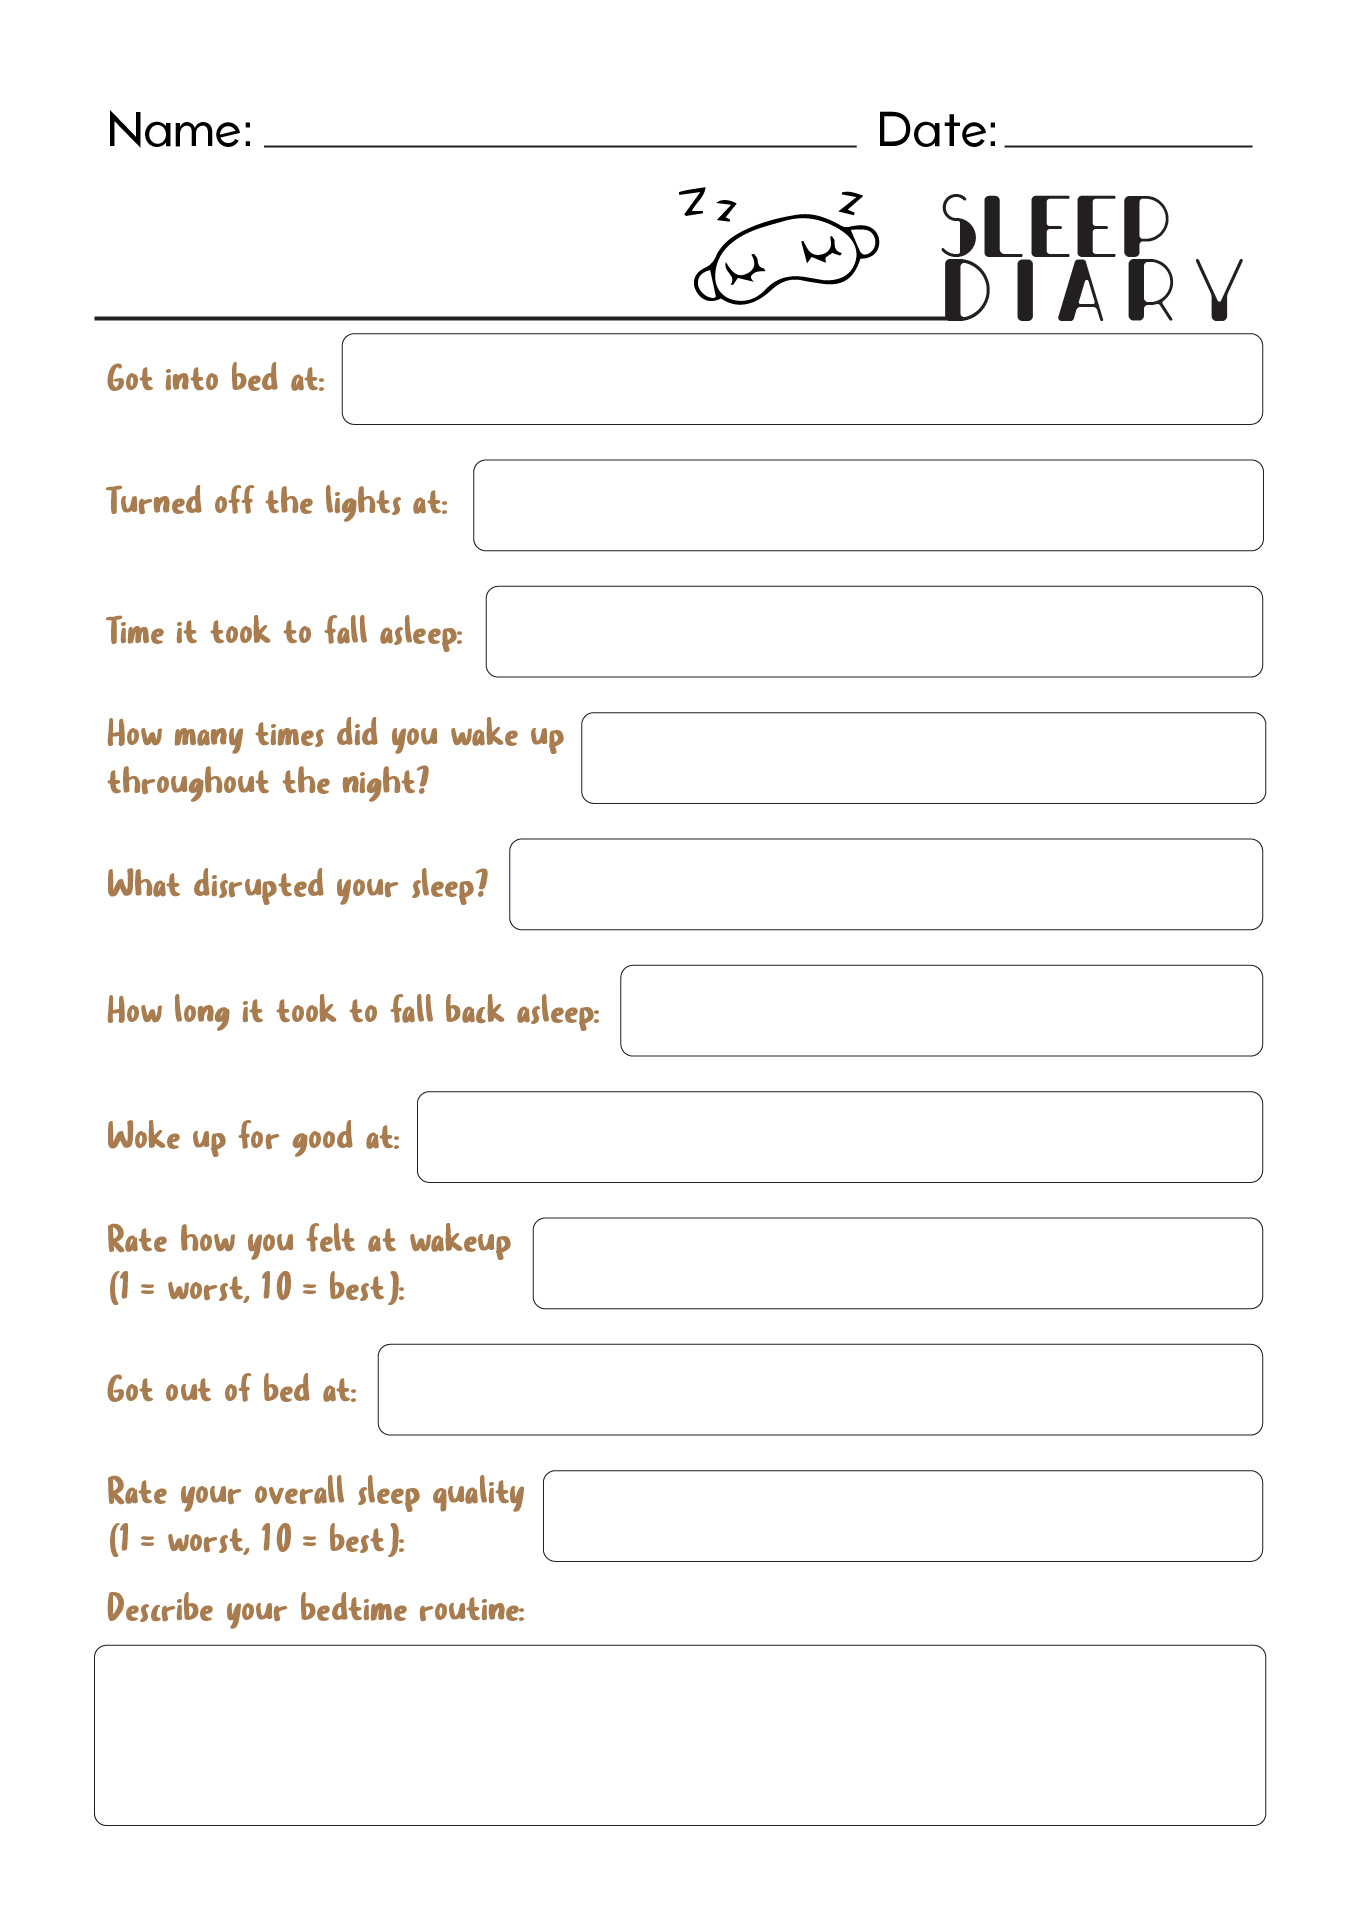 18 Best Images of Sleep Diary Worksheet - Printable Sleep Log Worksheet